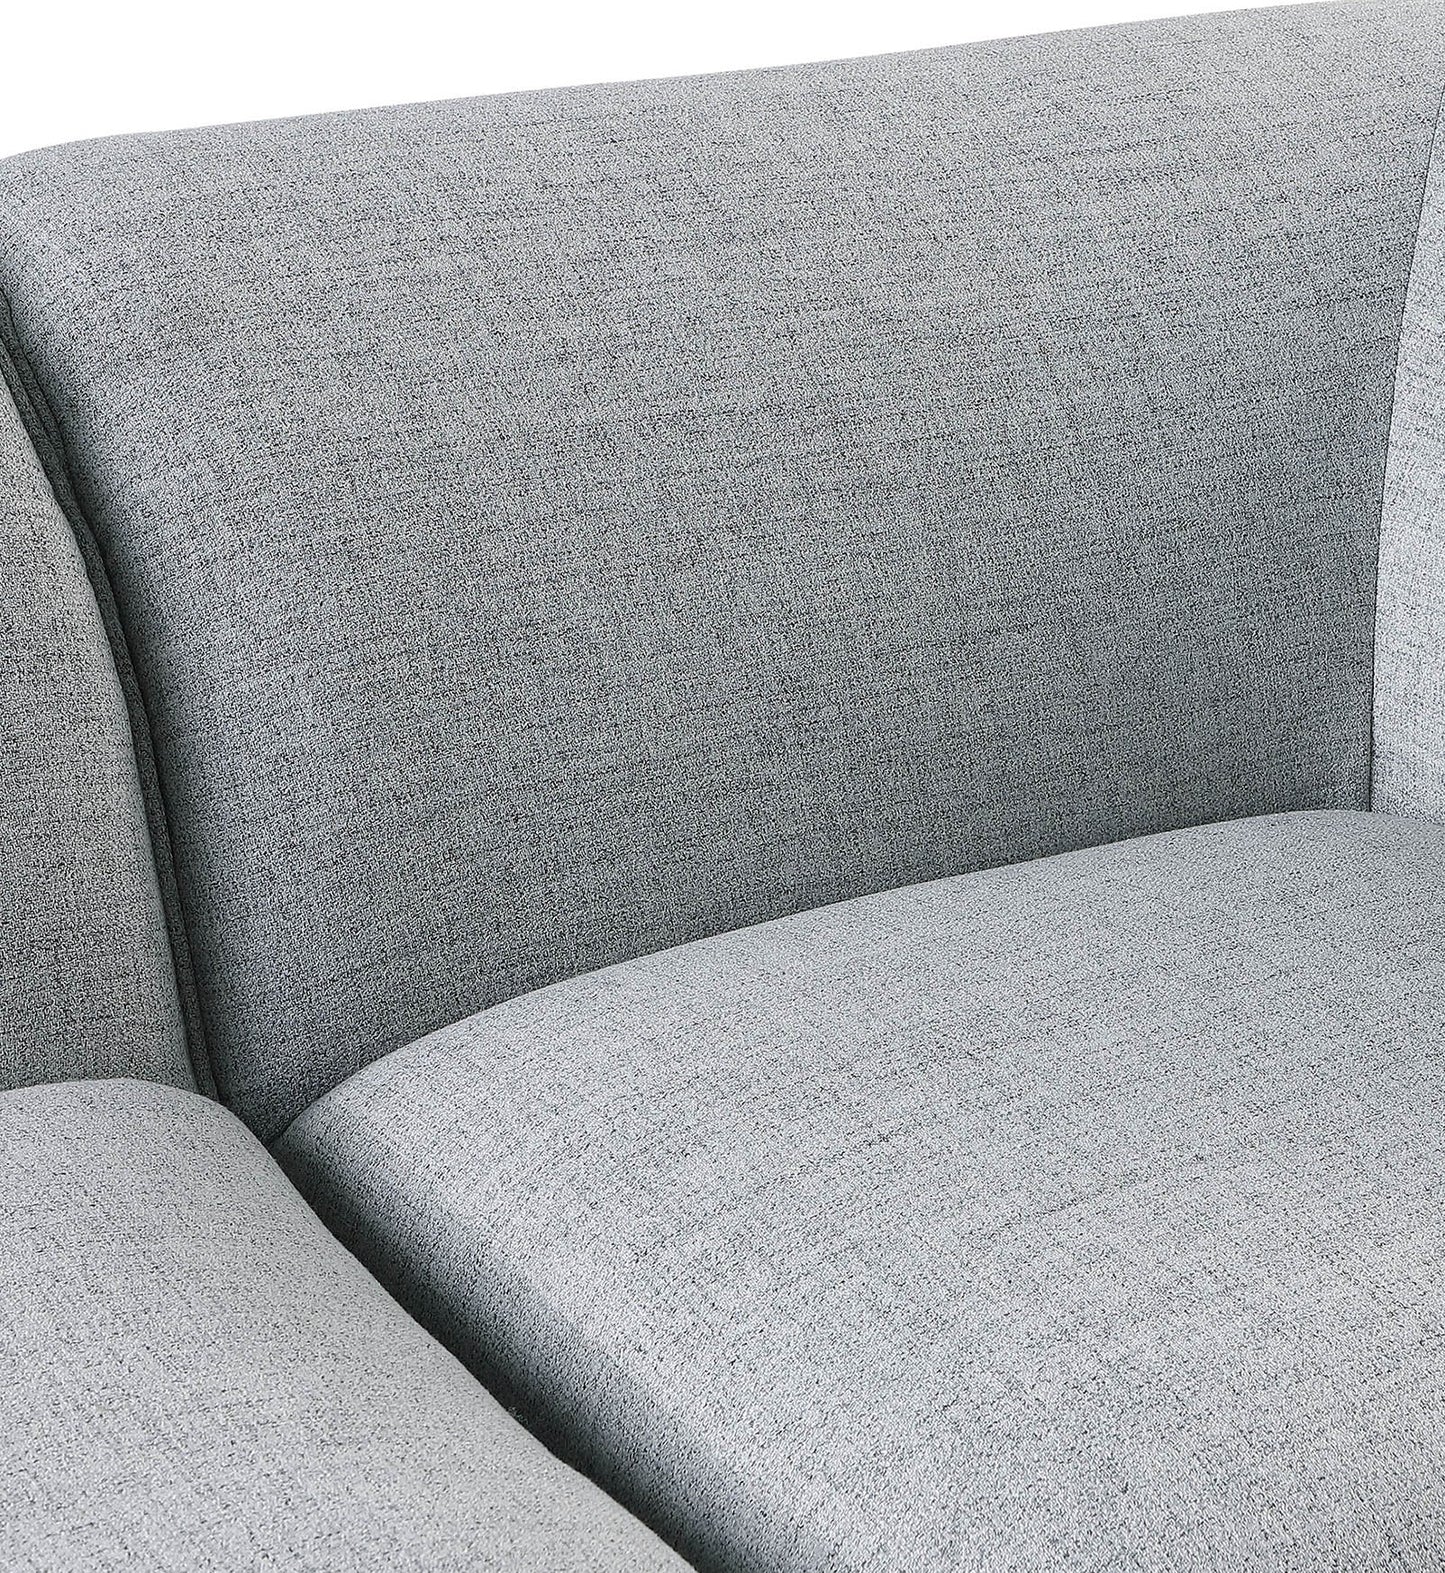 tavolo grey durable linen textured modular sofa s99